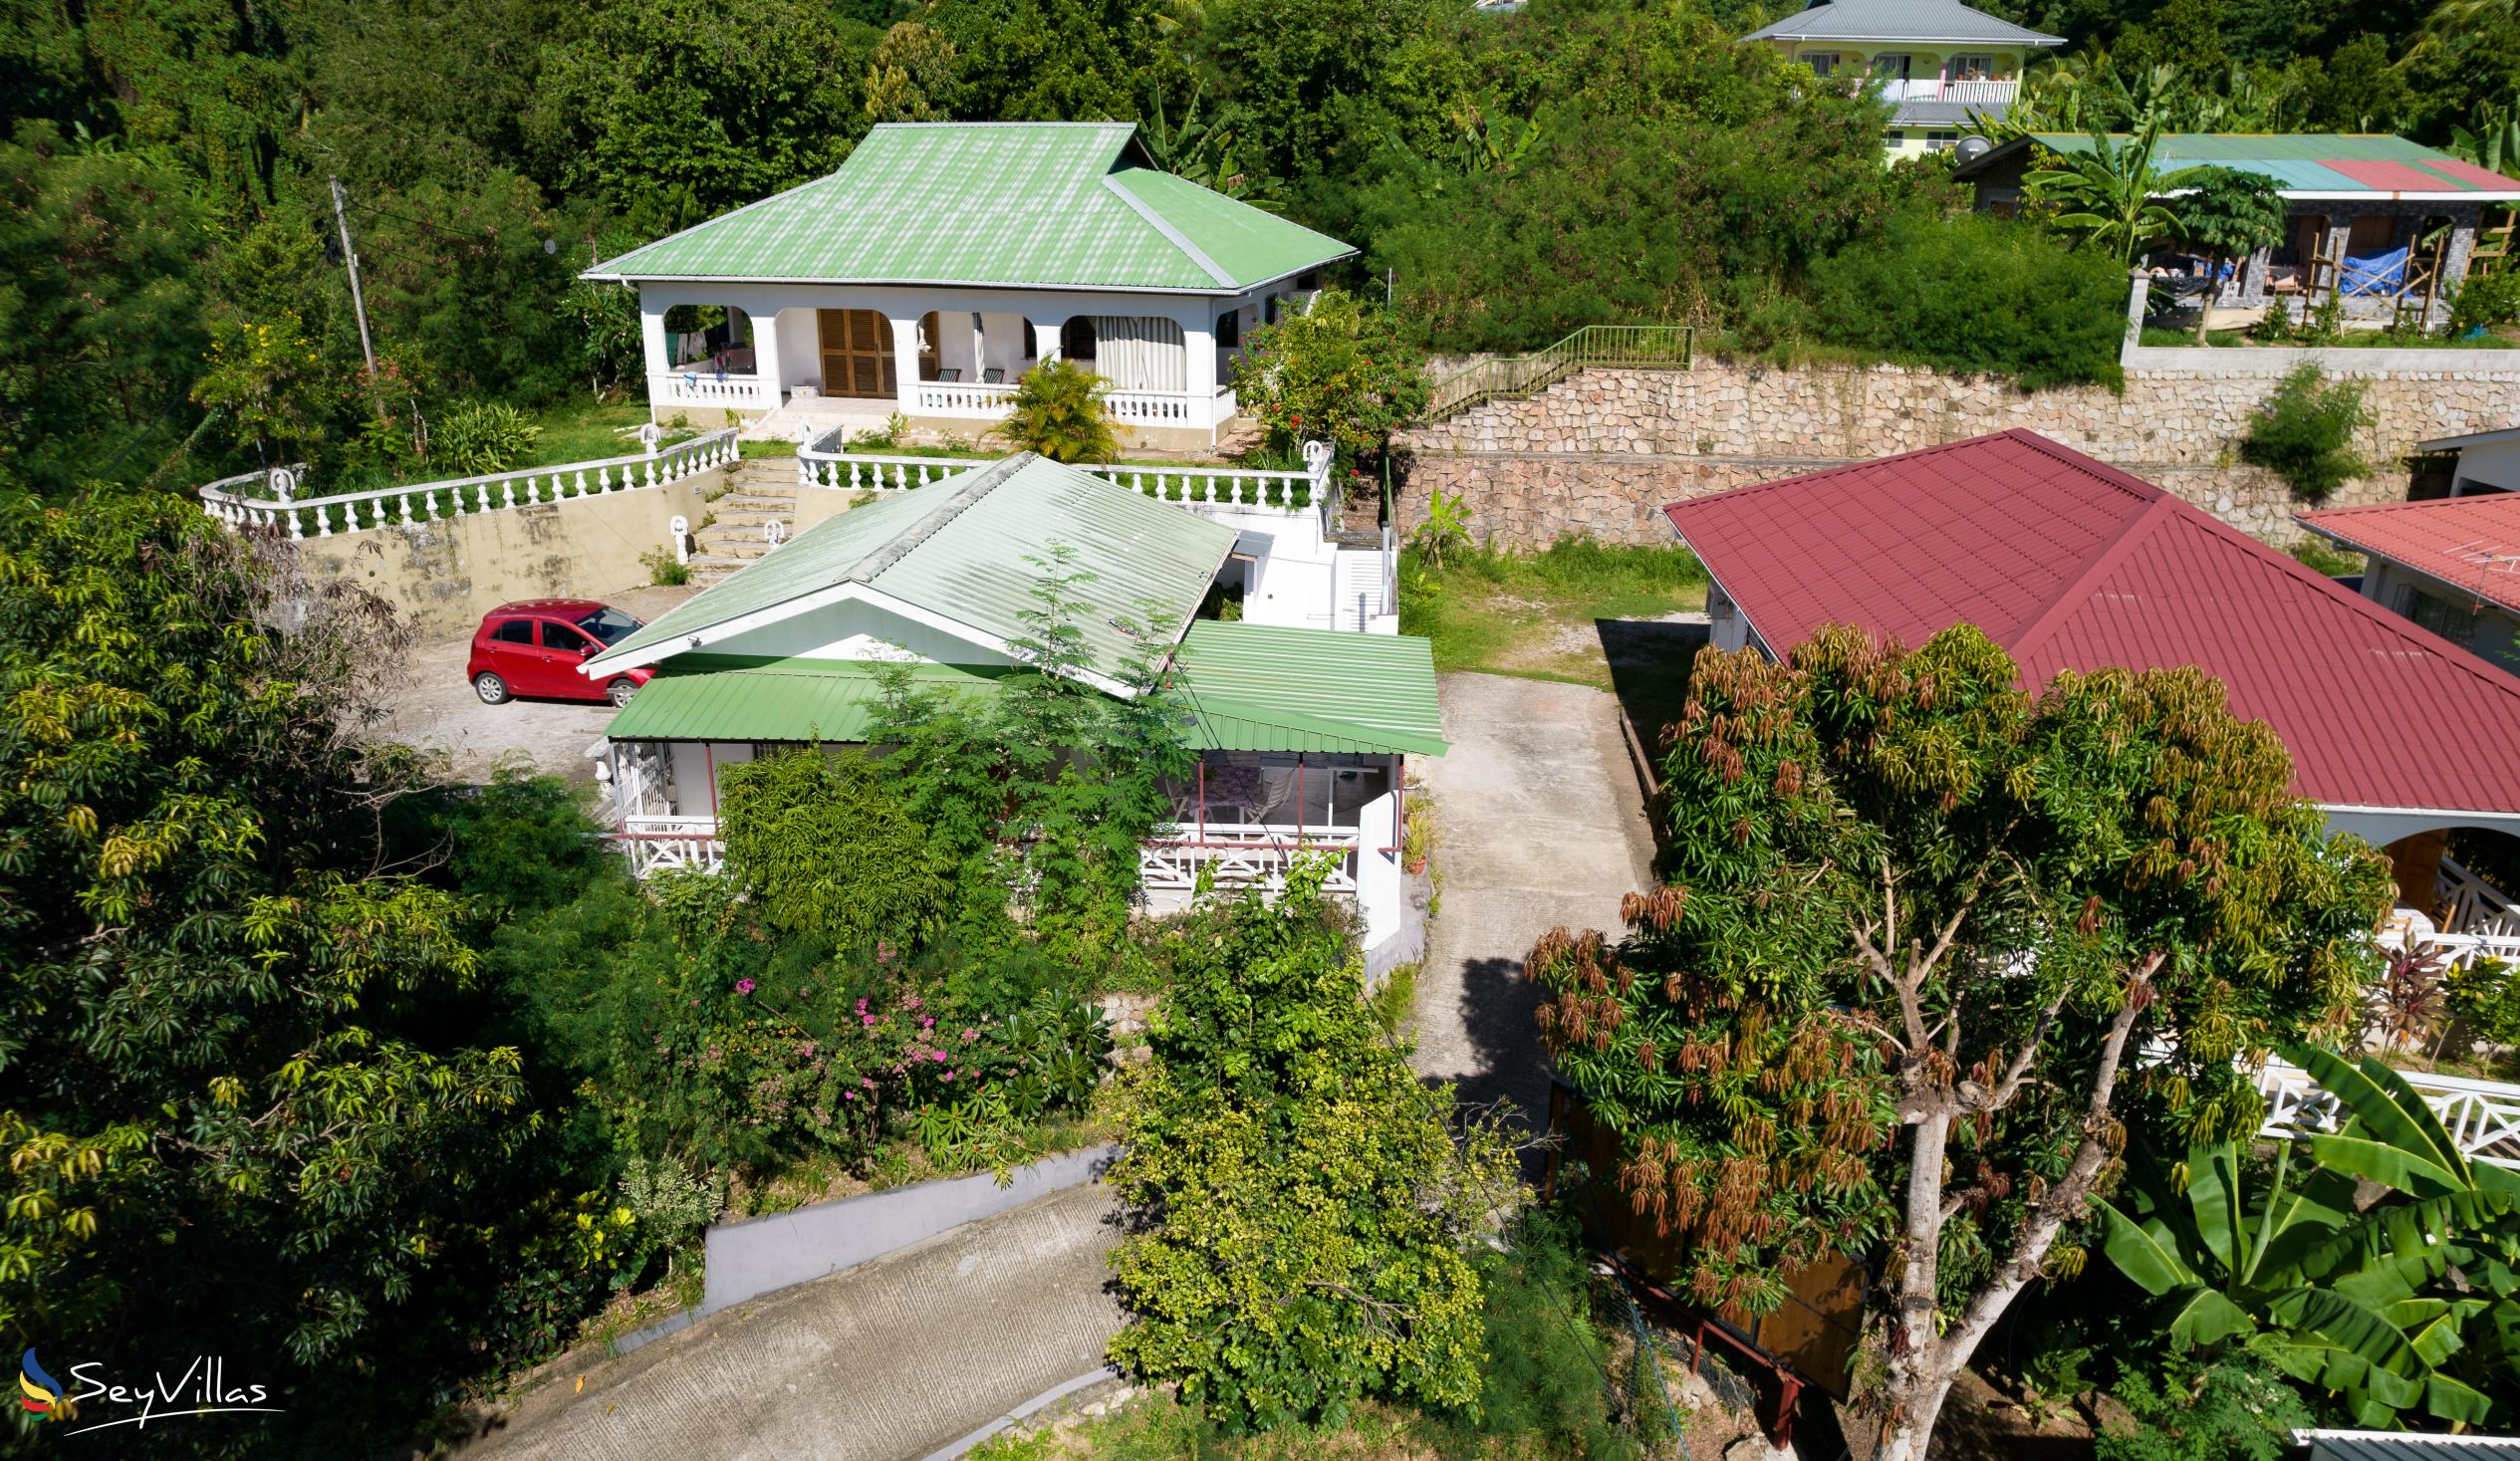 Foto 4: Baie Ste Anne Maison des Vacanze - Aussenbereich - Praslin (Seychellen)